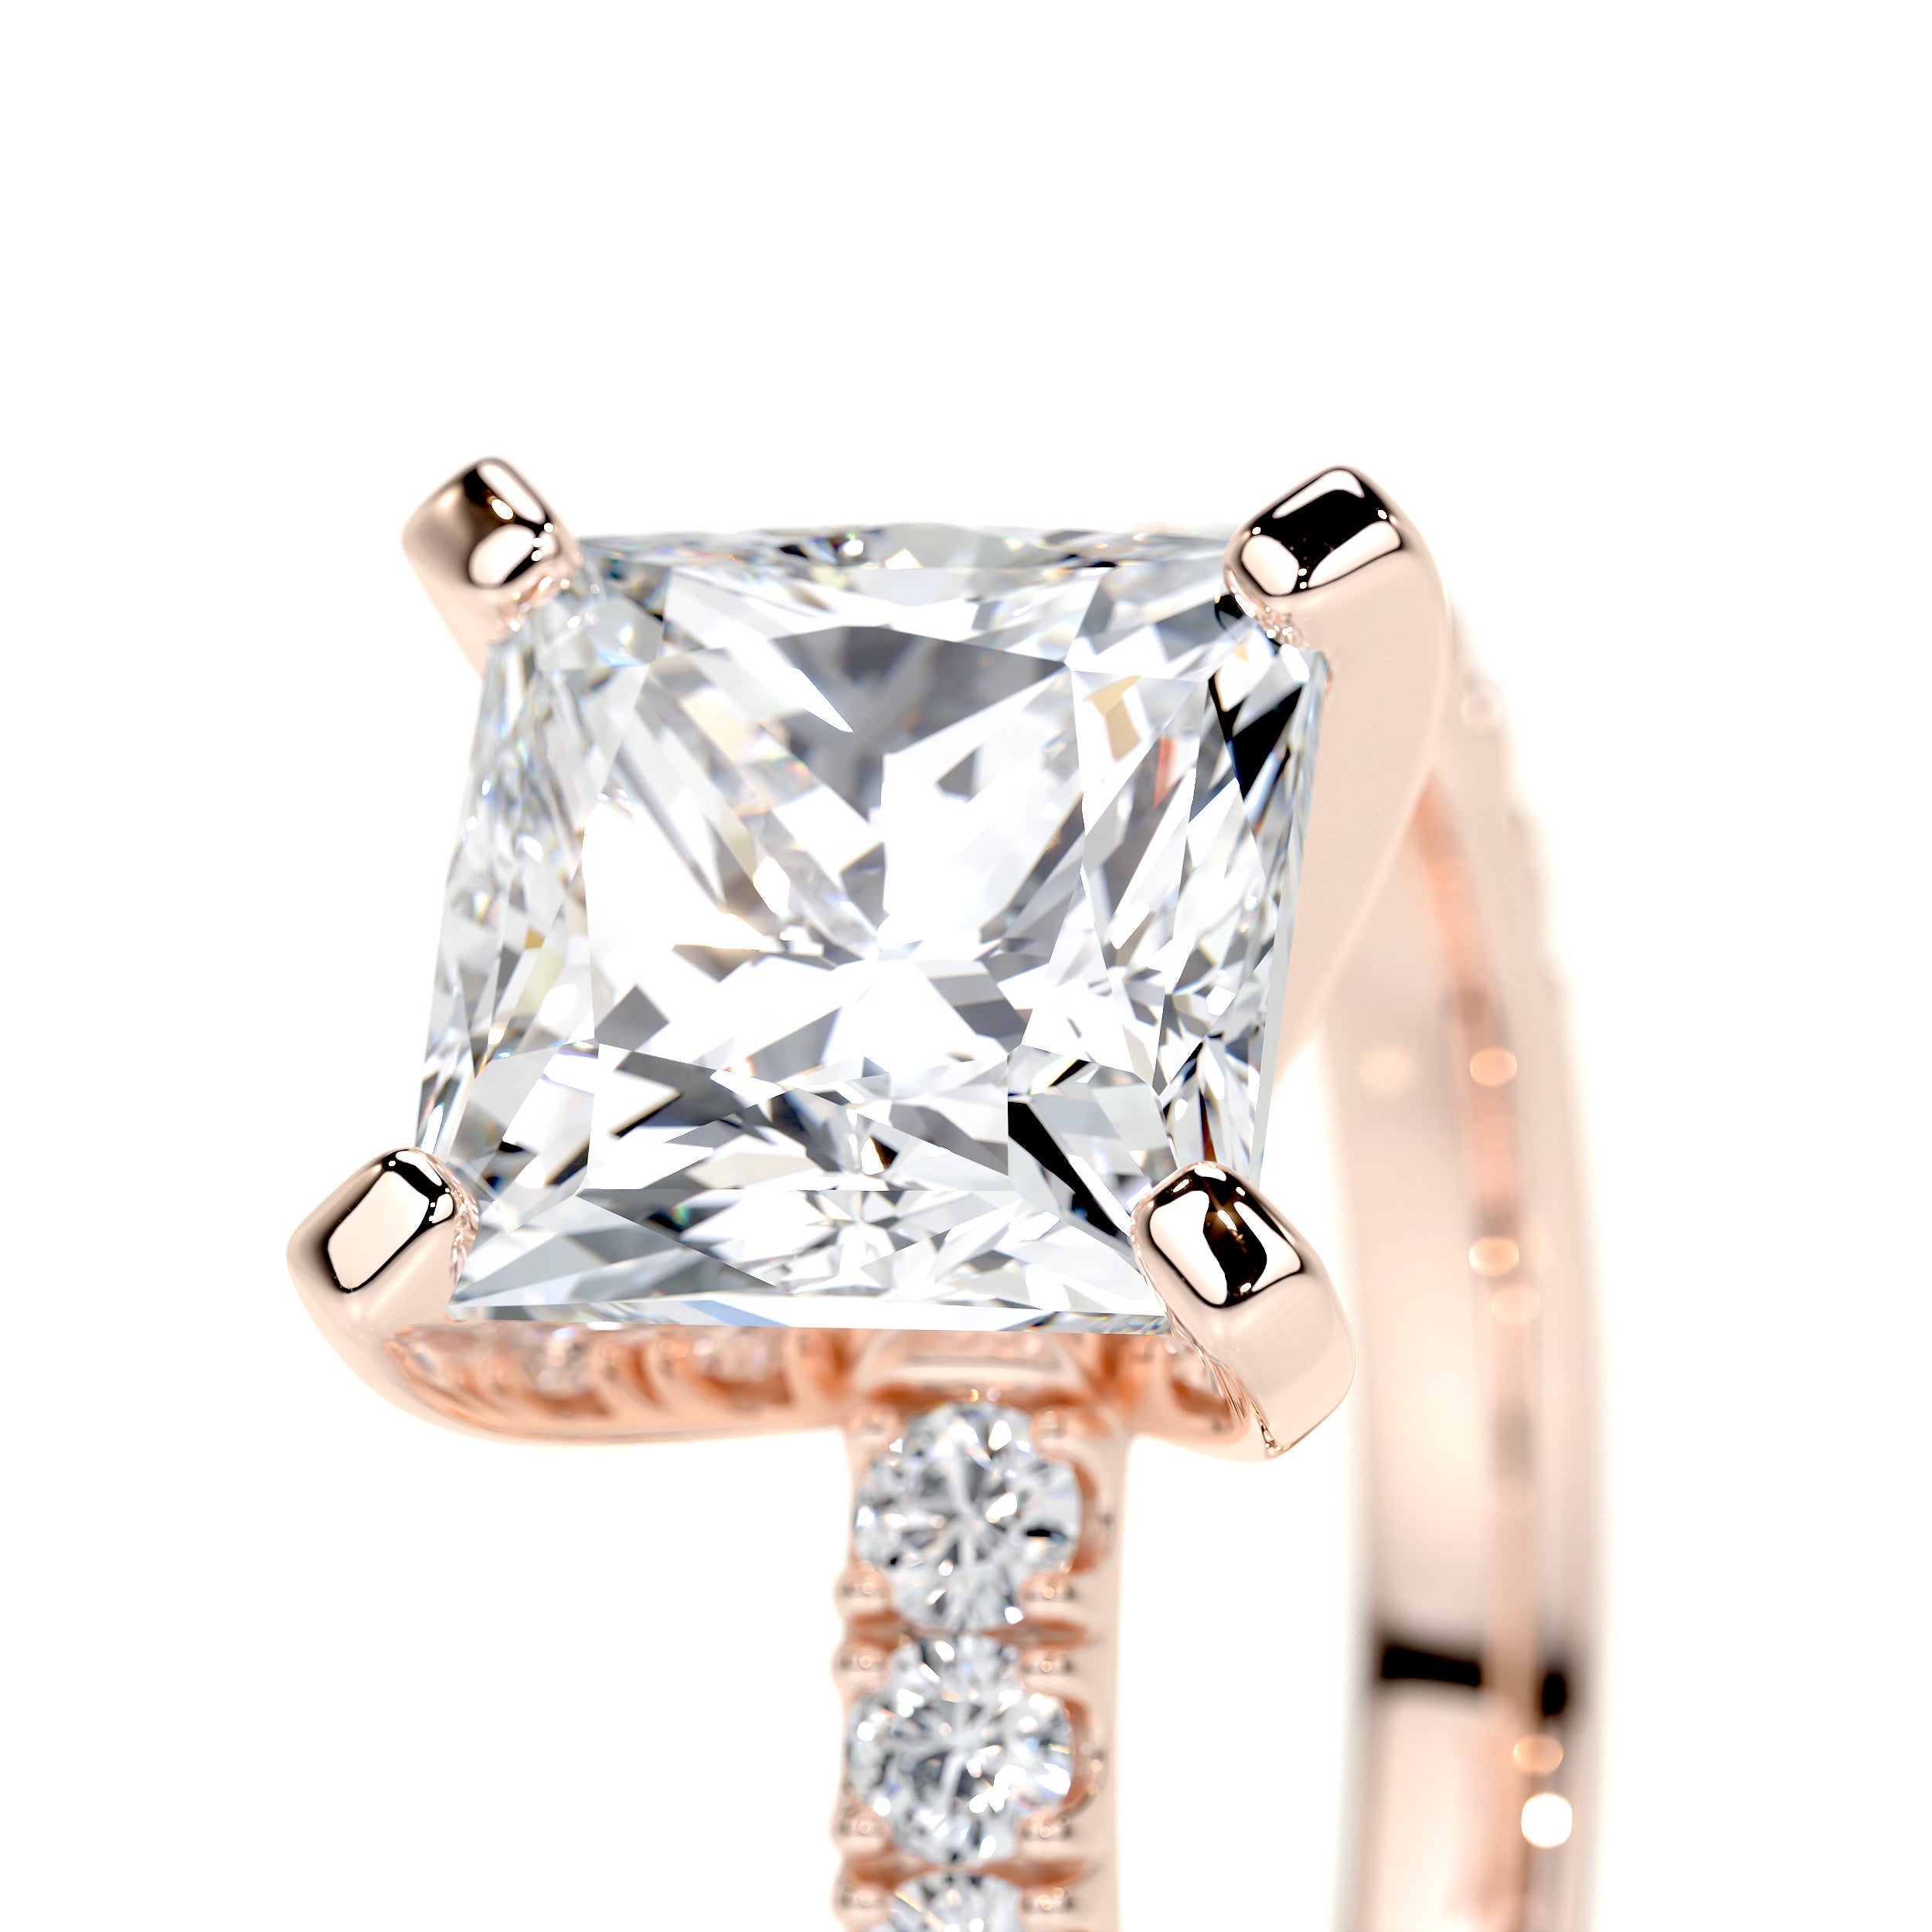 Blair Lab Grown Diamond Ring   (2.5 Carat) -14K Rose Gold